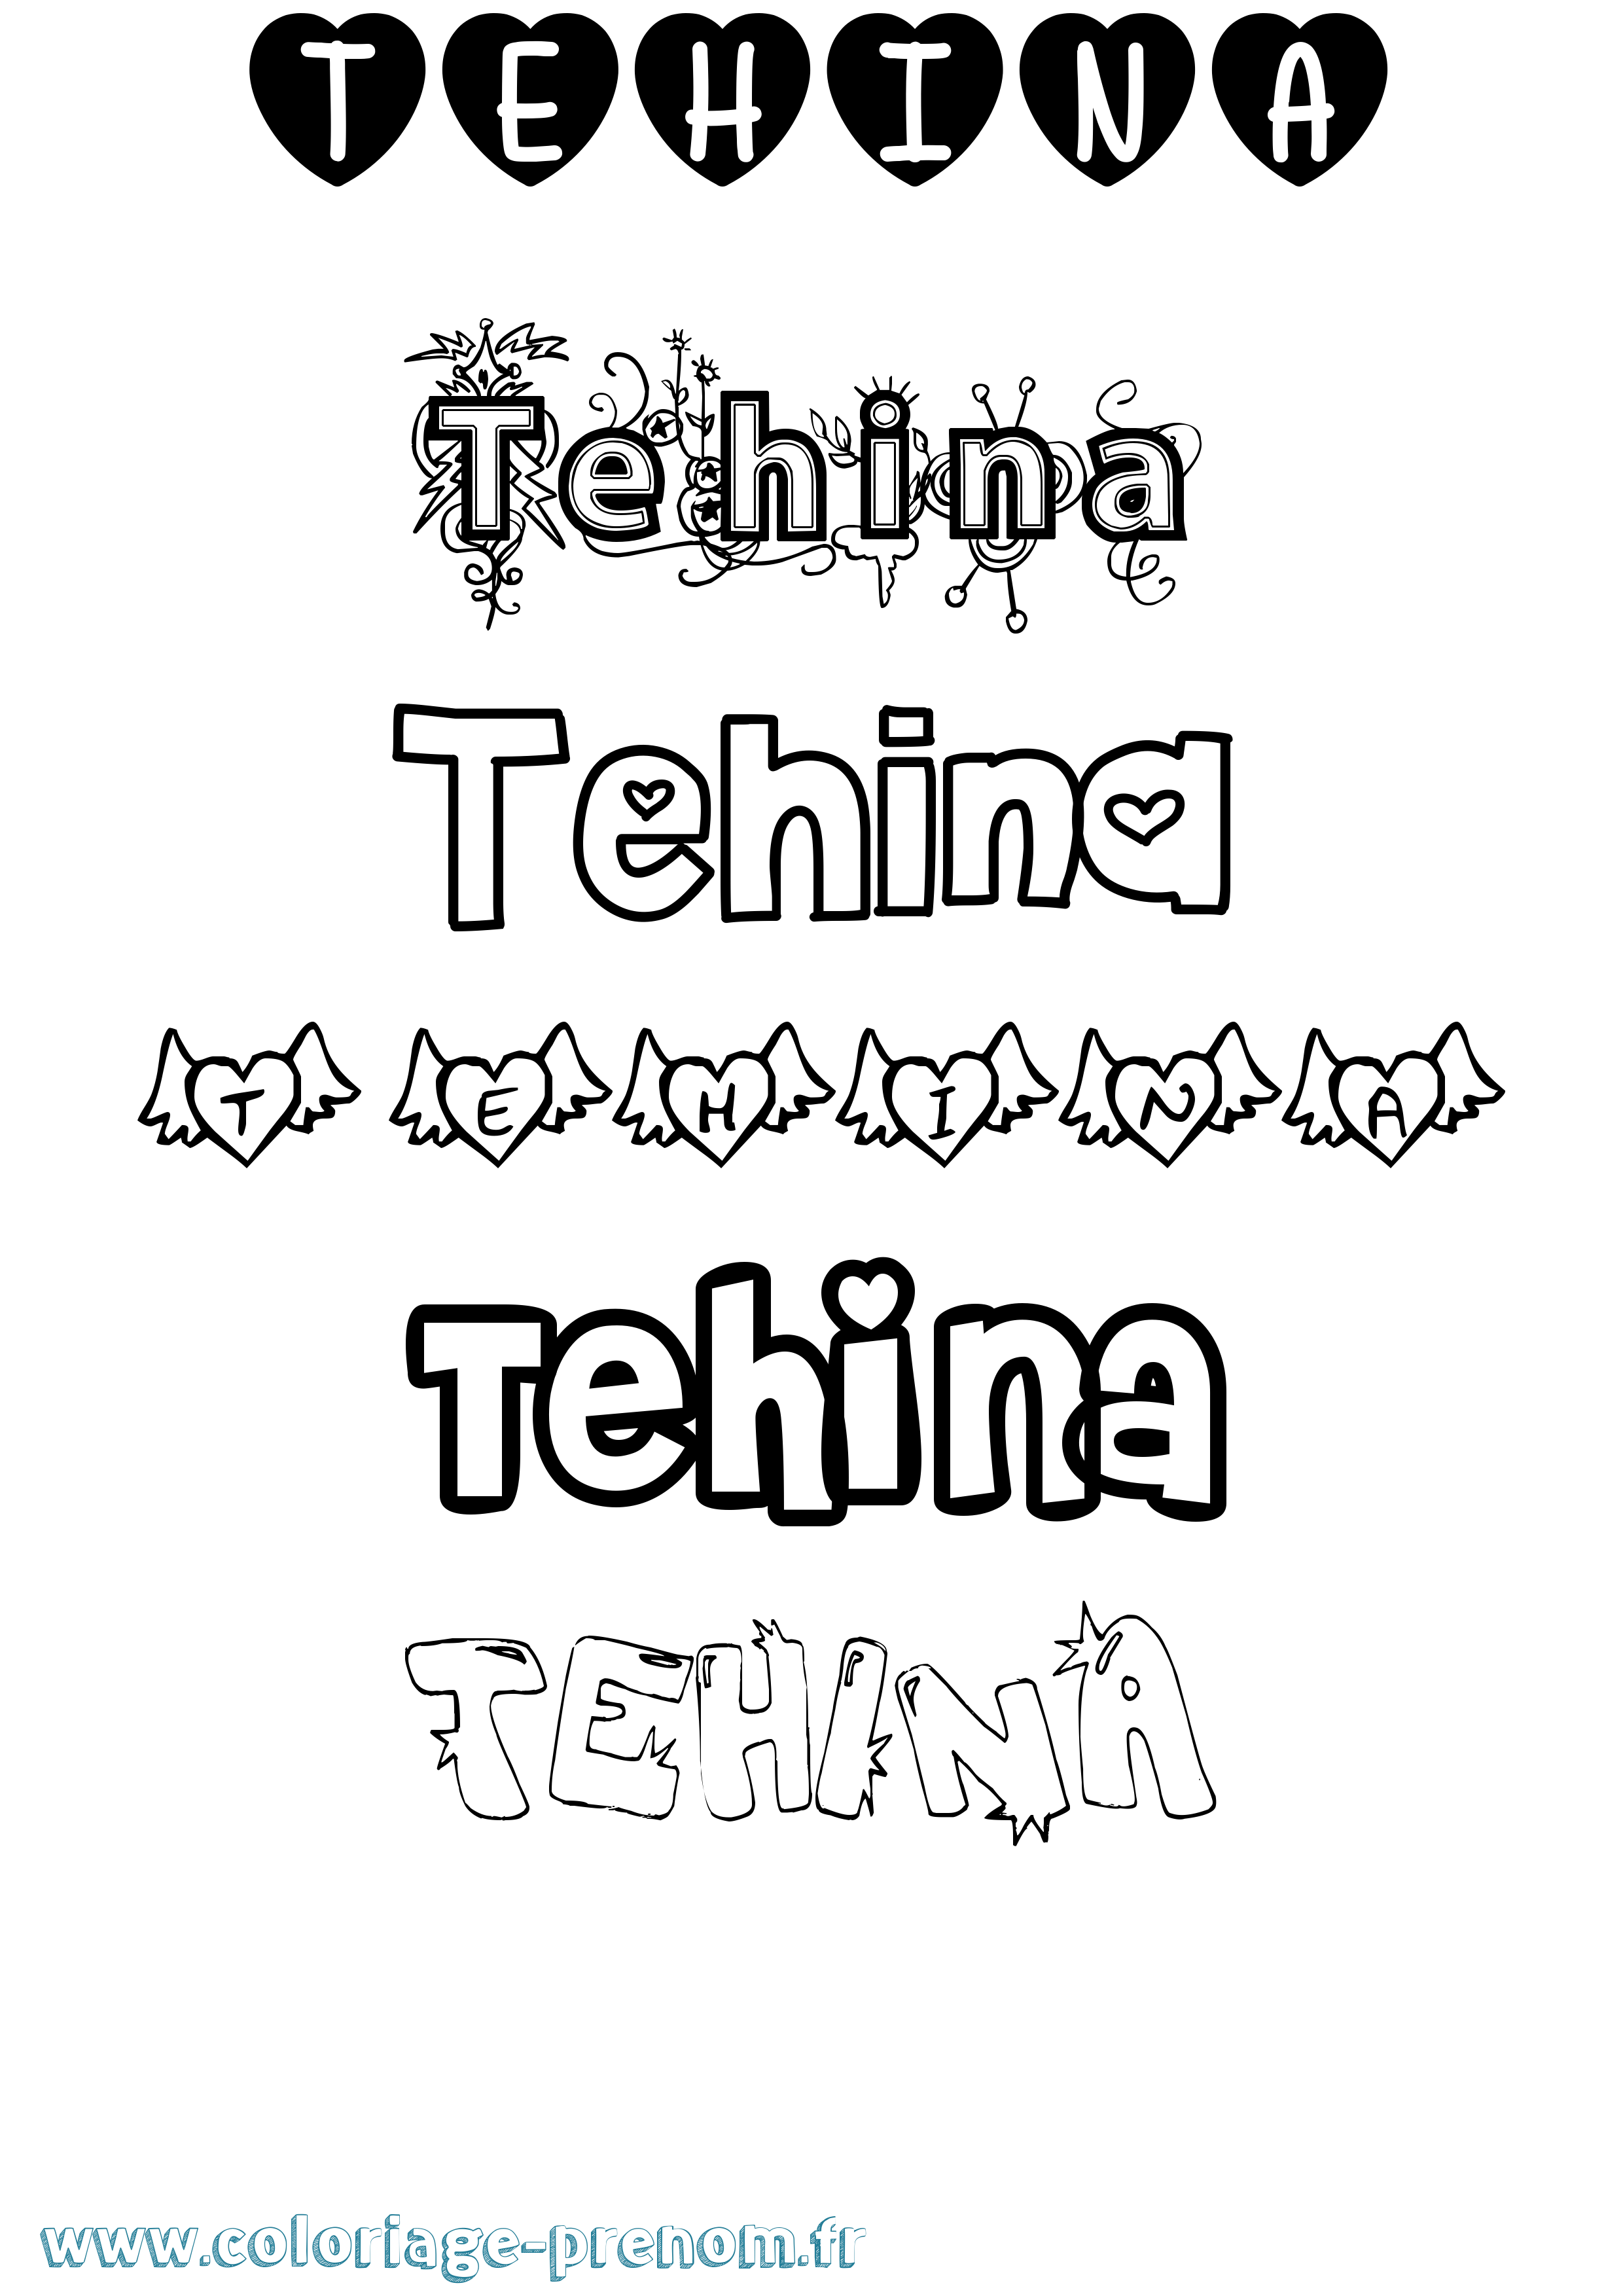 Coloriage prénom Tehina Girly